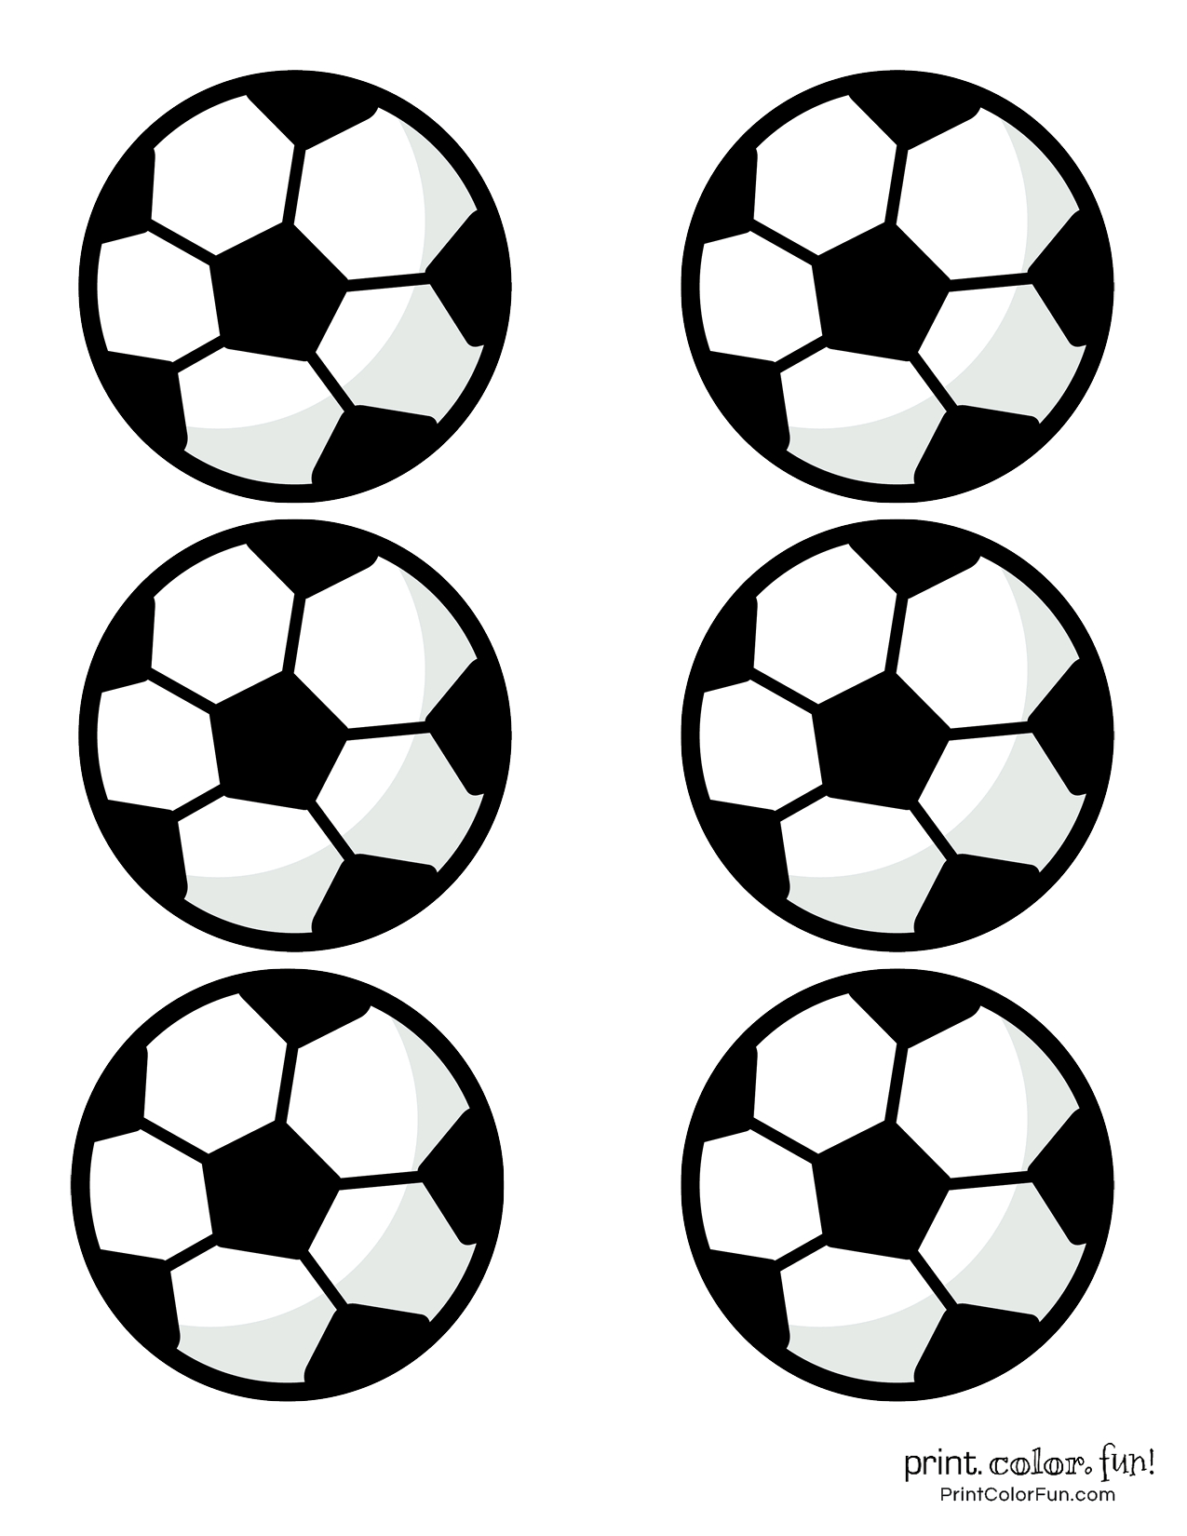 Printable Soccer Ball Template - Printable World Holiday